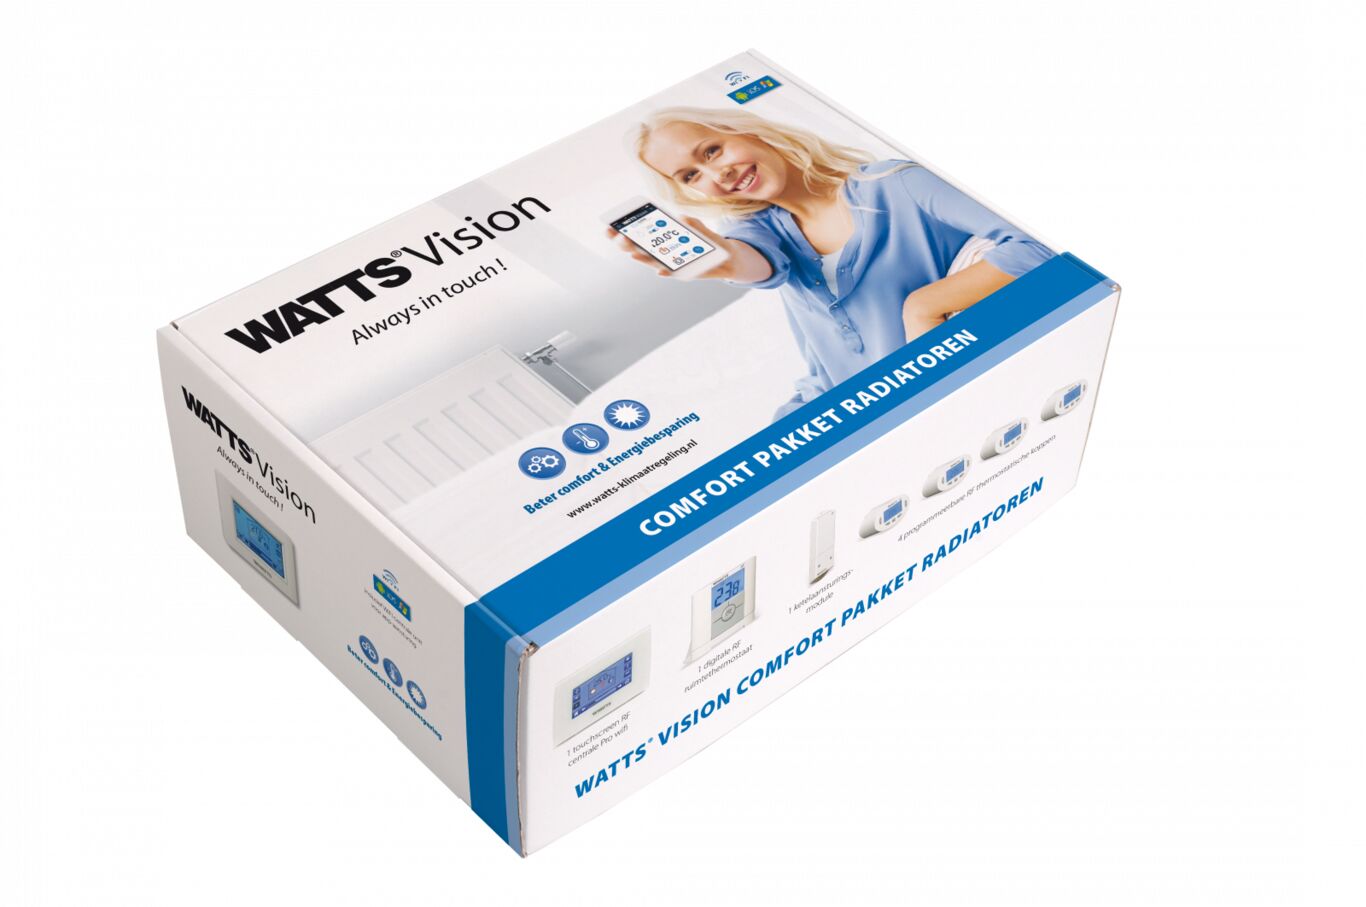 watts vision comfortpakket voor radiatoren